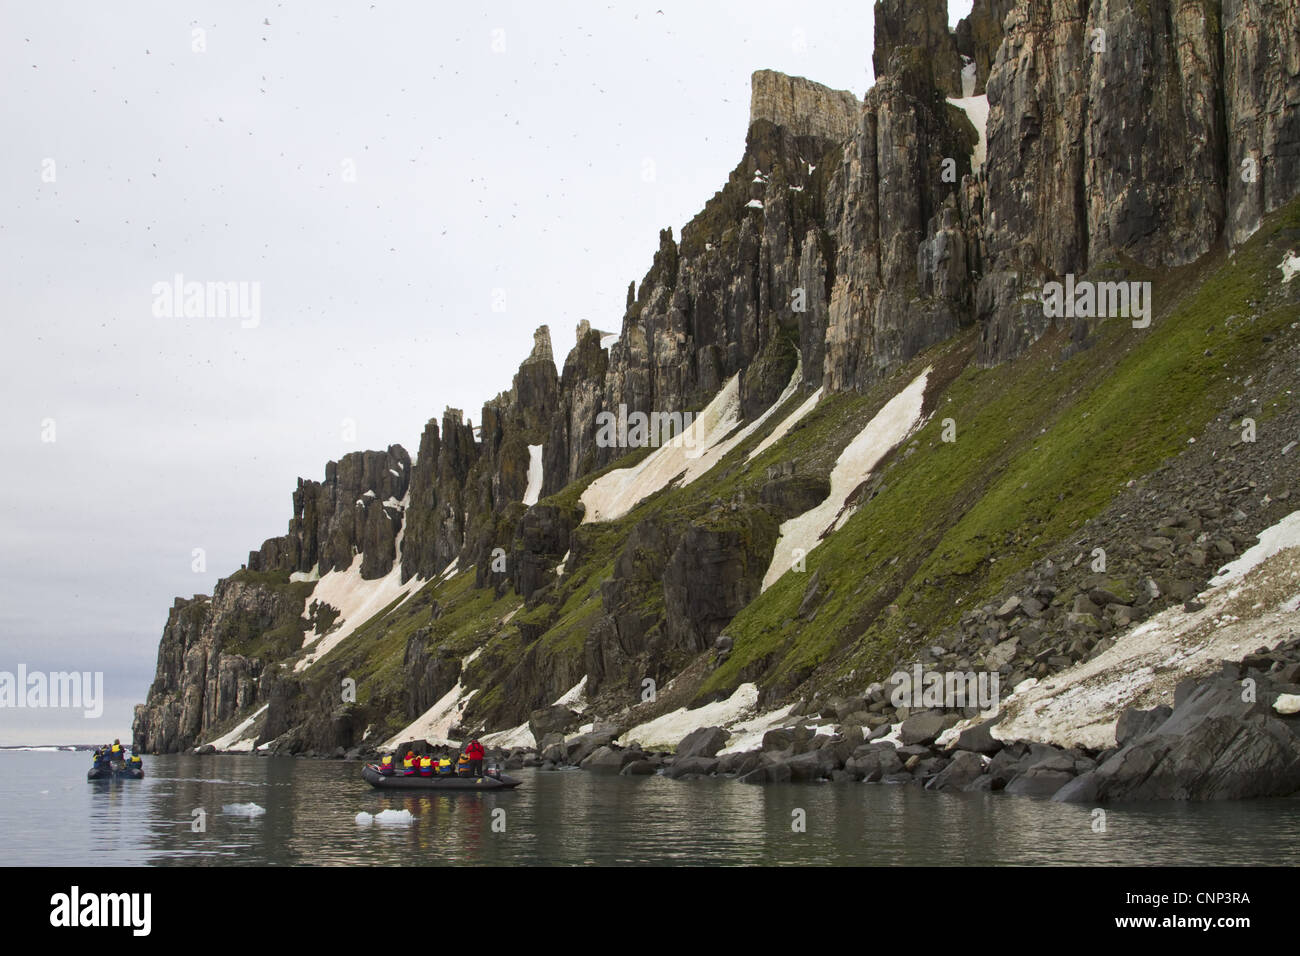 Les touristes en bateaux gonflables Zodiac ci-dessous de hautes falaises, Alkenfjellet, Spitzberg, Svalbard, juillet Banque D'Images